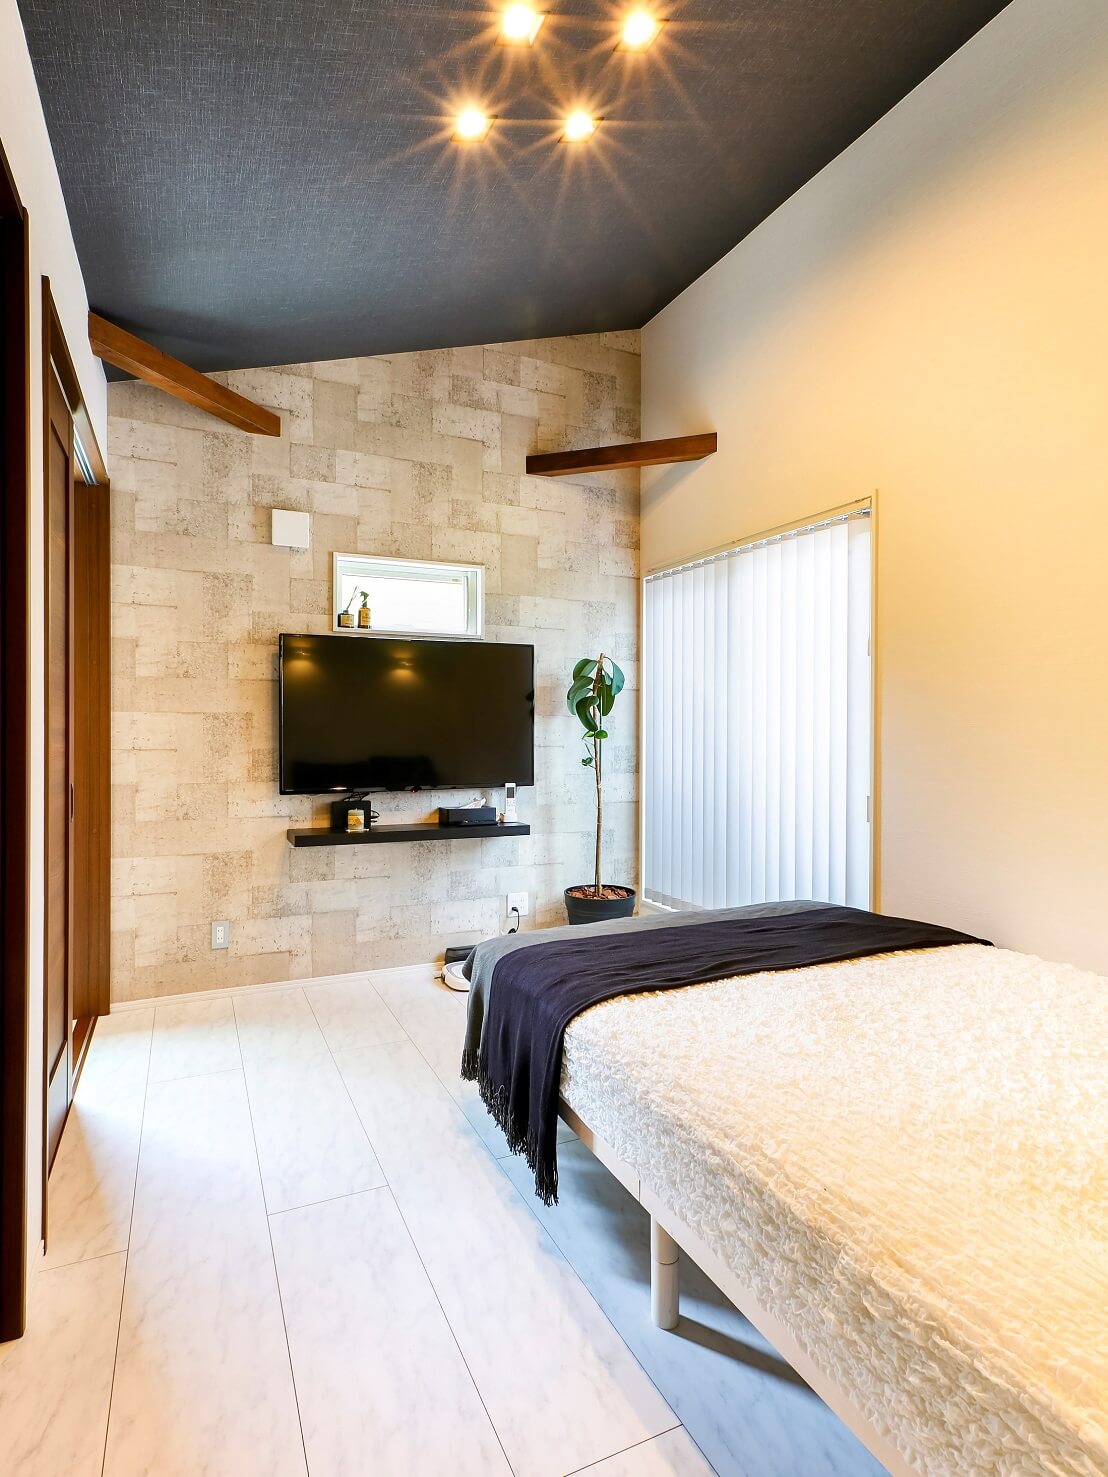 床のトーンを変えゴージャスな雰囲気に仕上がった寝室